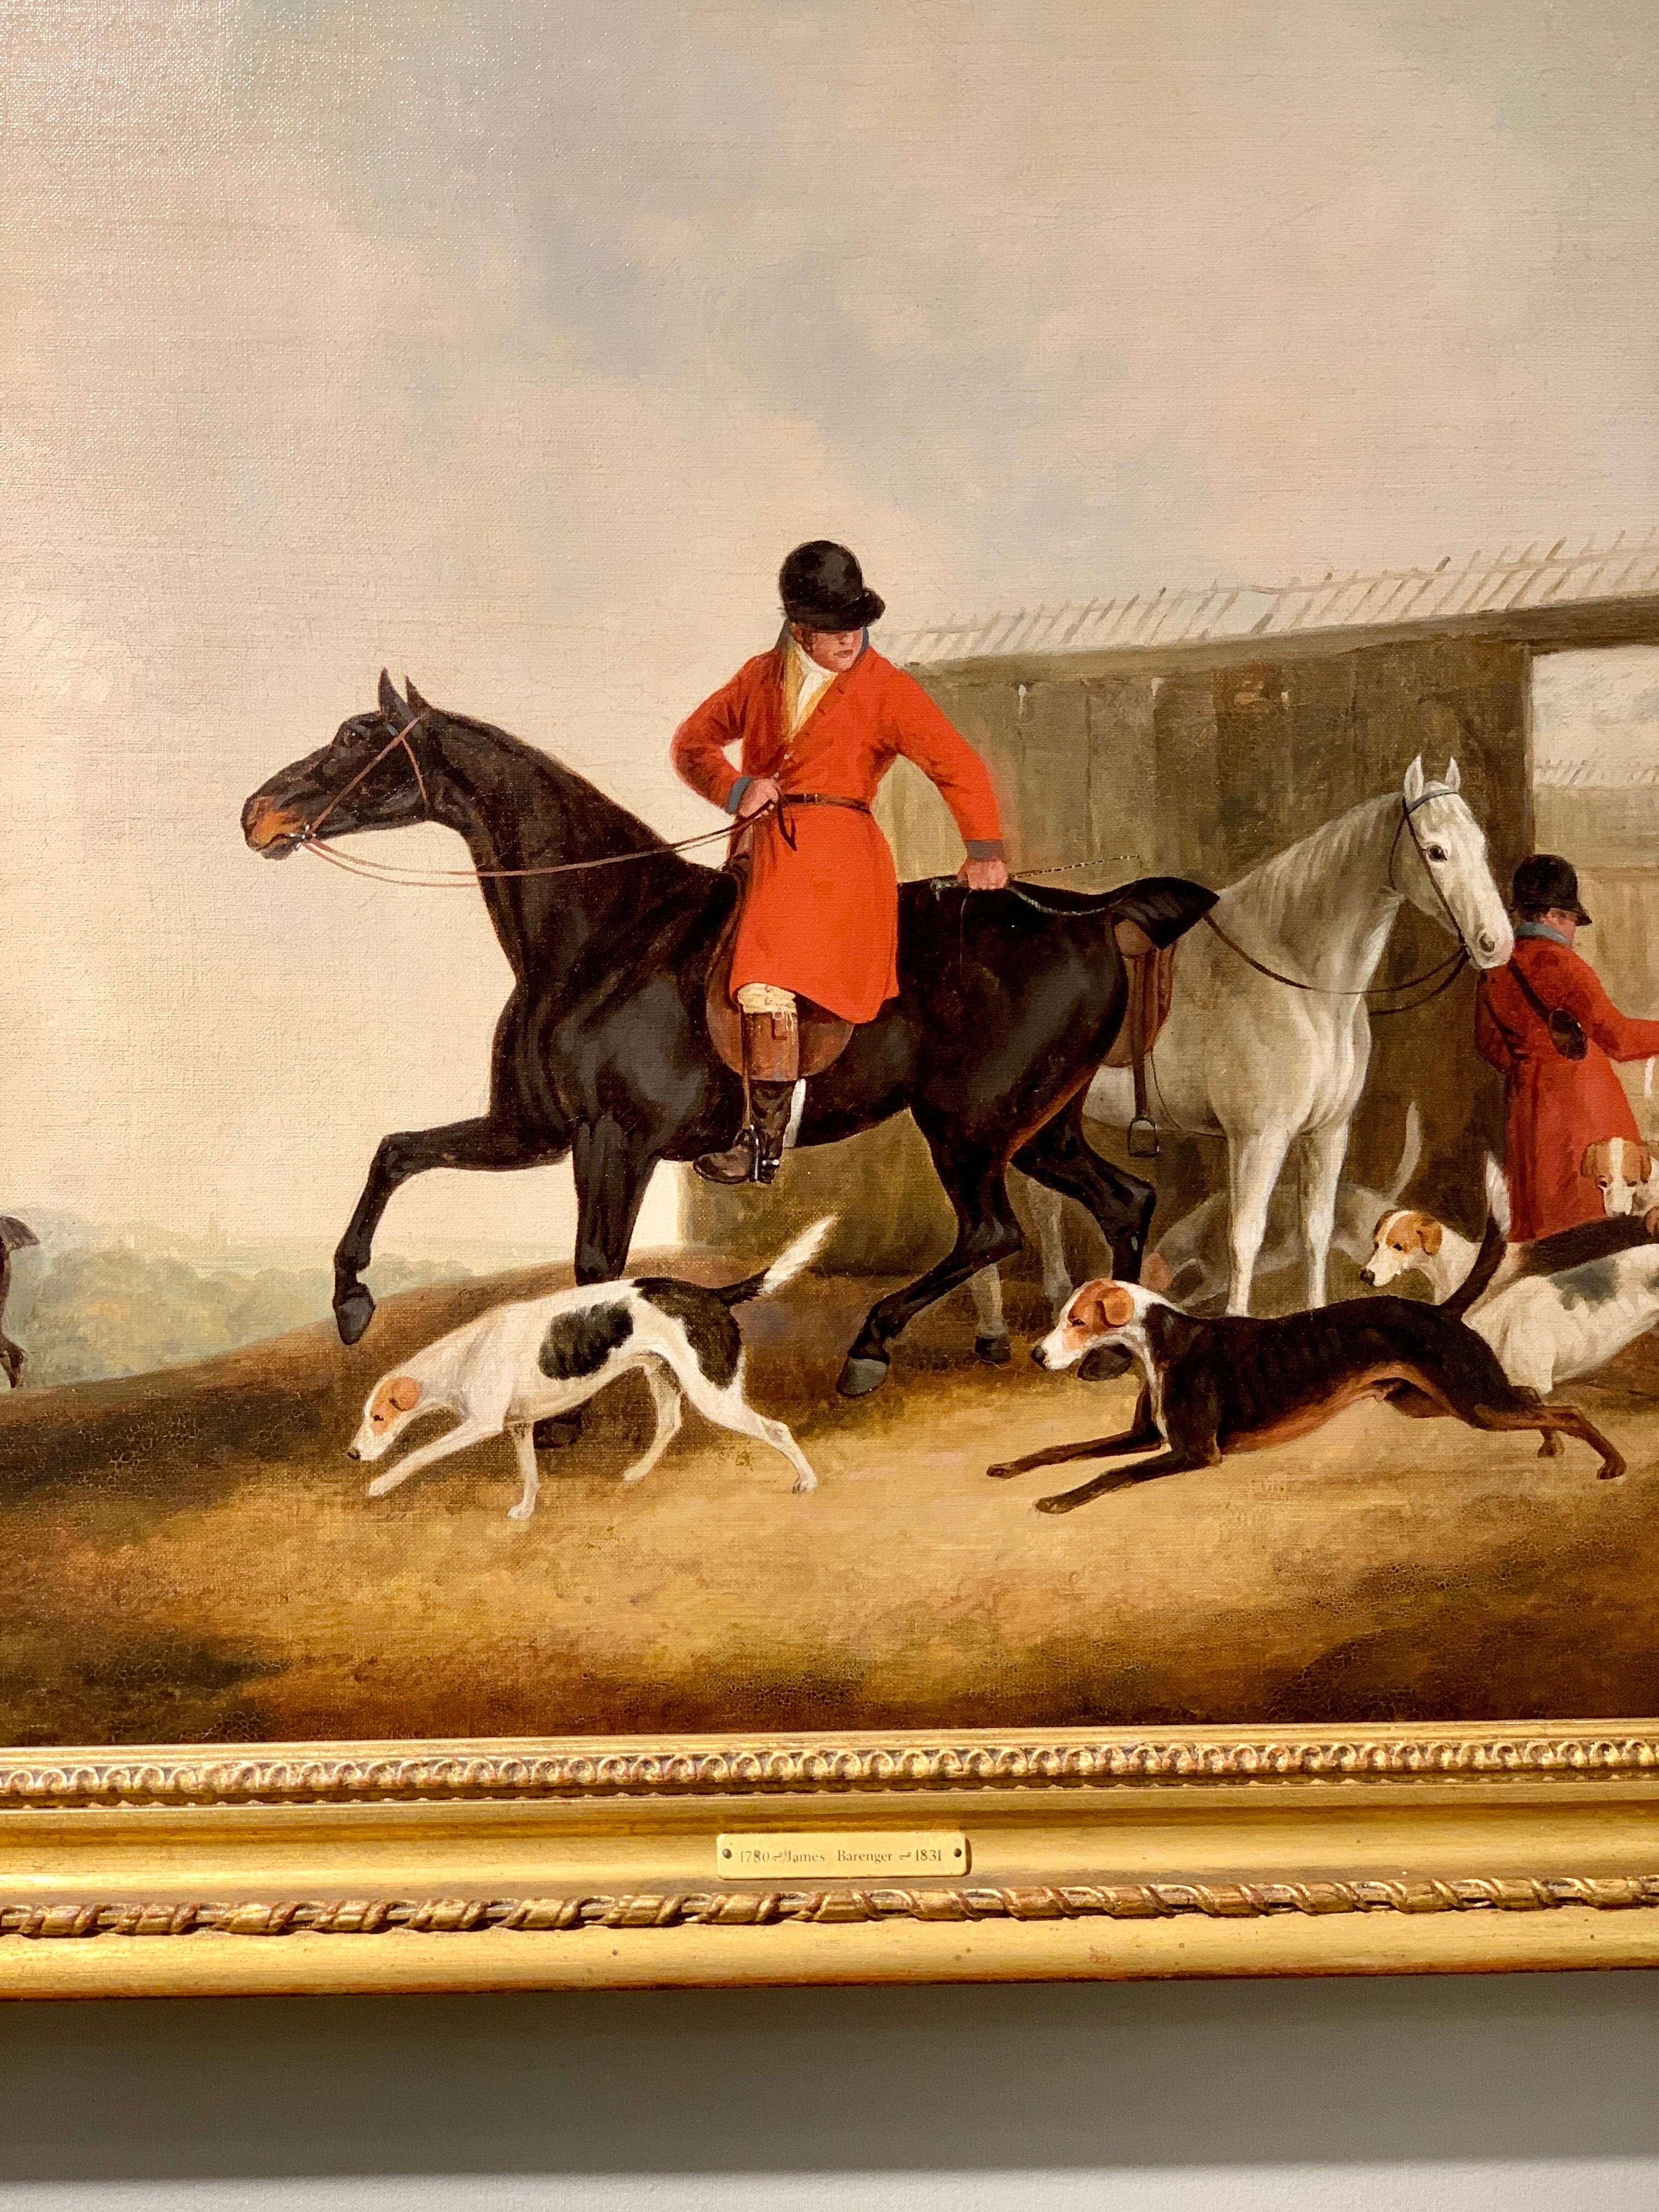 Antique Angleterre du 19ème siècle, chasseur de renard et chiens de chasse dans un paysage.  - Painting de James Barenger